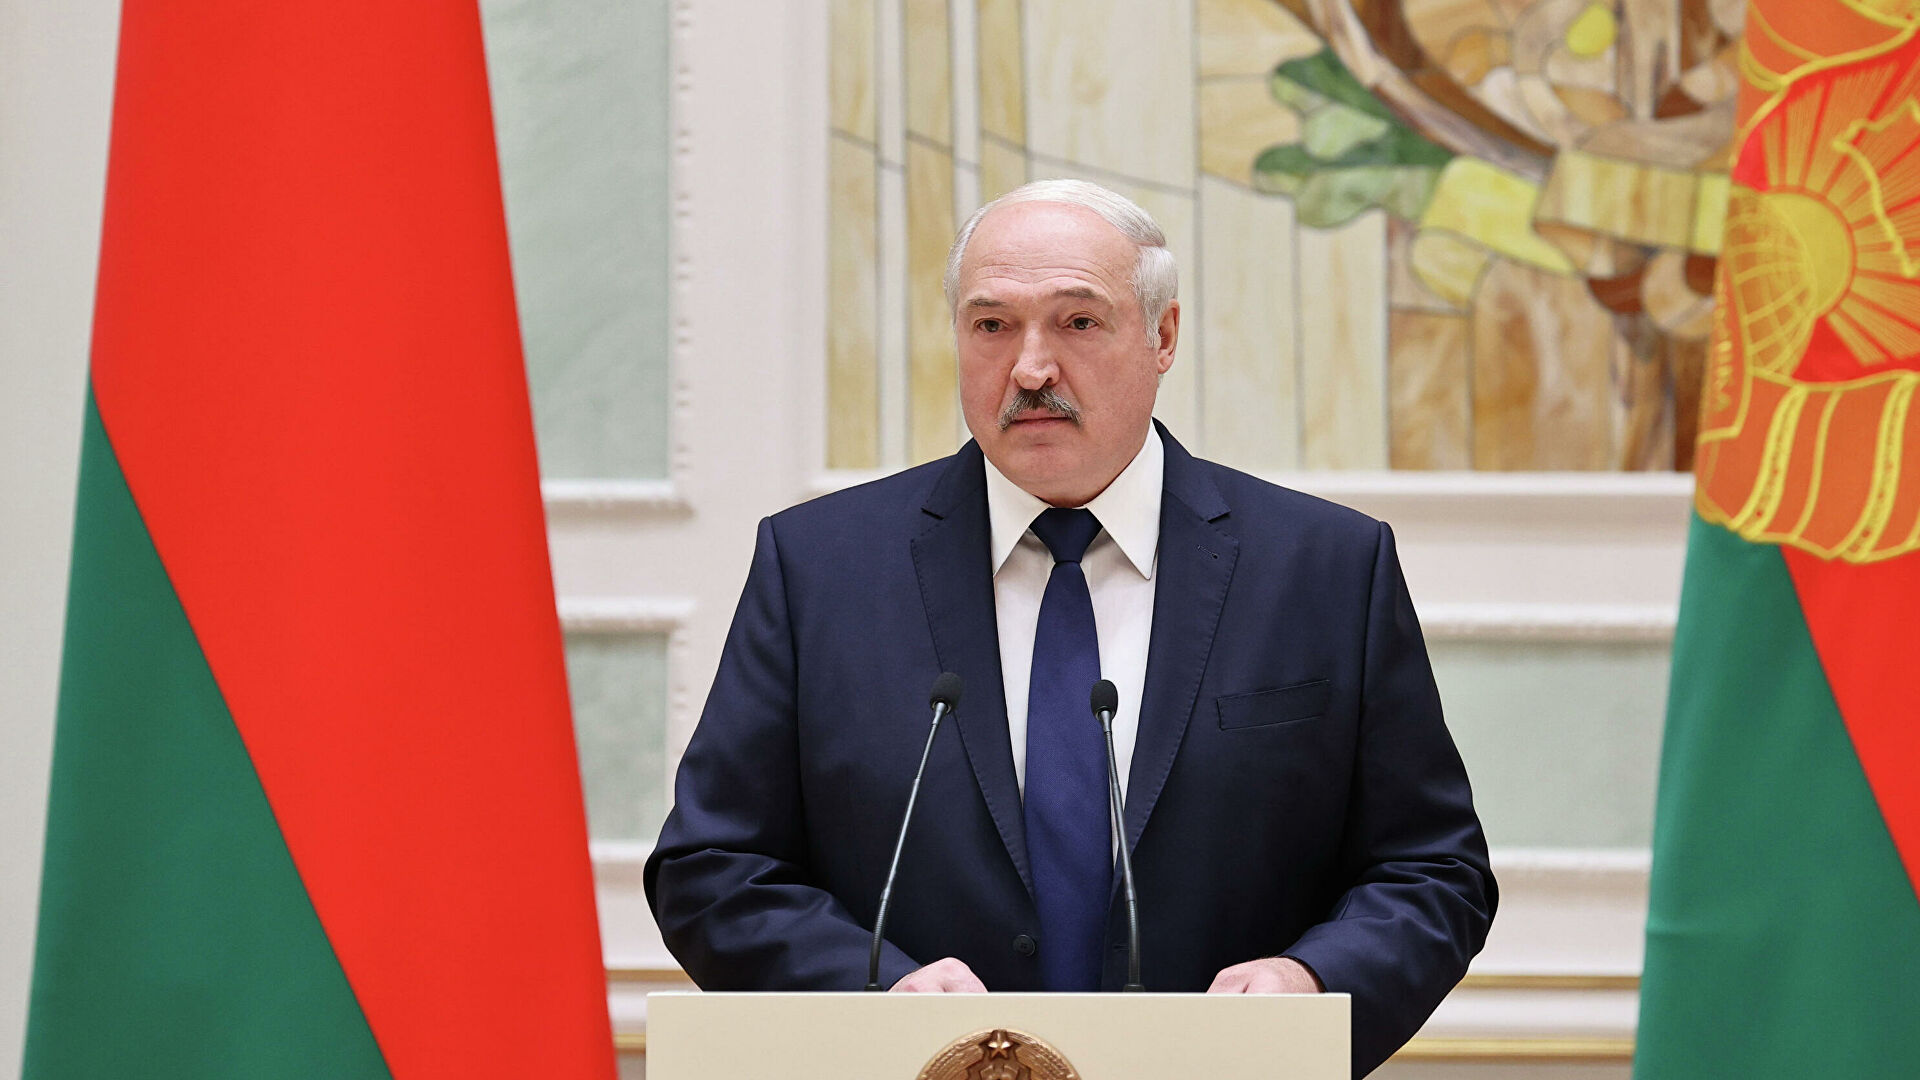 Лукашенко заявил о возможности производить свою вакцину от COVID-19 - РИА  Новости, 14.12.2020